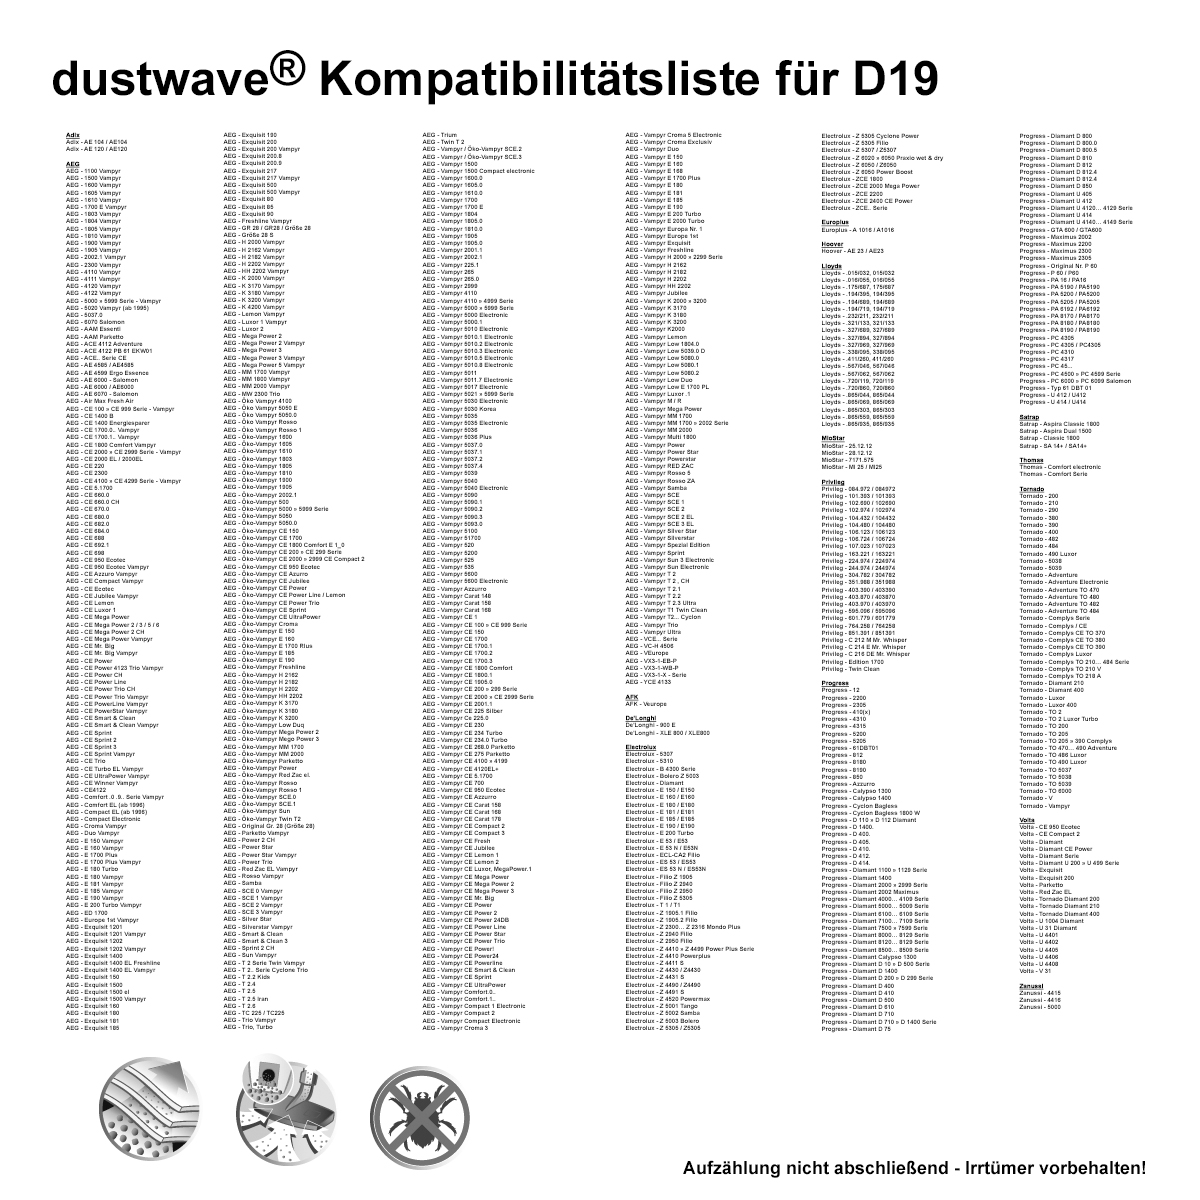 Dustwave® 1 Staubsaugerbeutel für AquaPur AE 700 - hocheffizient, mehrlagiges Mikrovlies mit Hygieneverschluss - Made in Germany